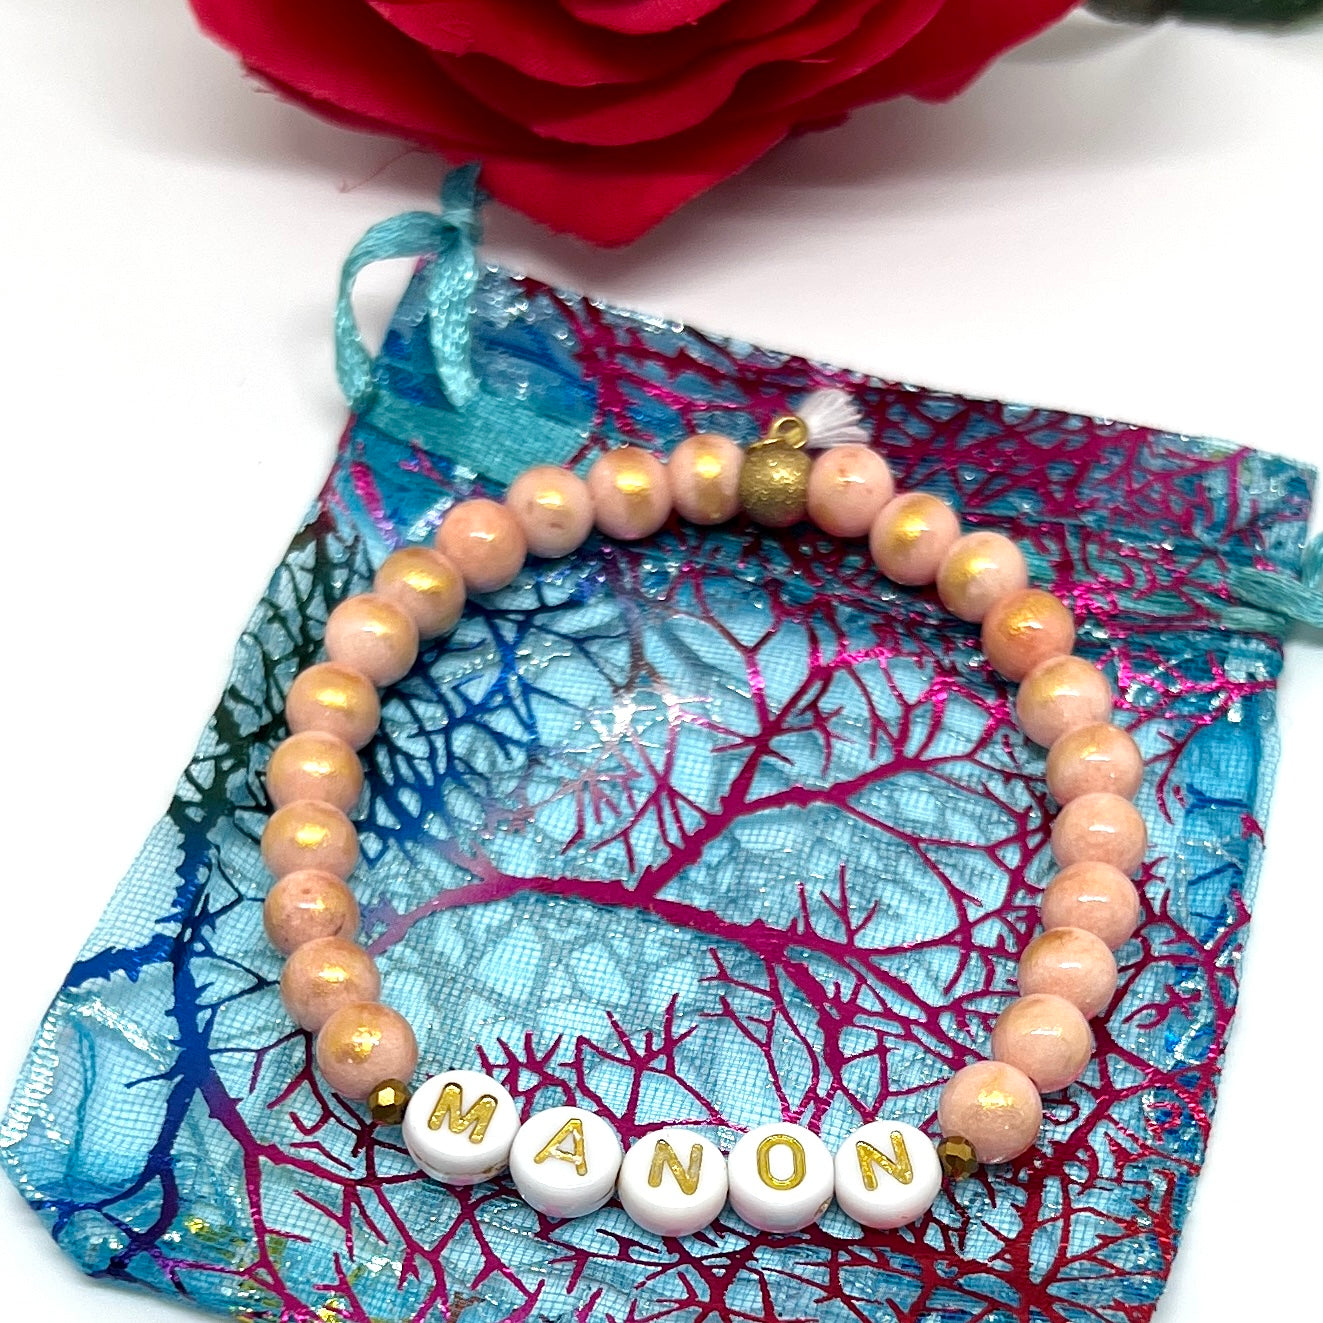 Bracelet personnalisé prénom perles naturelles - Rose, pêche, or